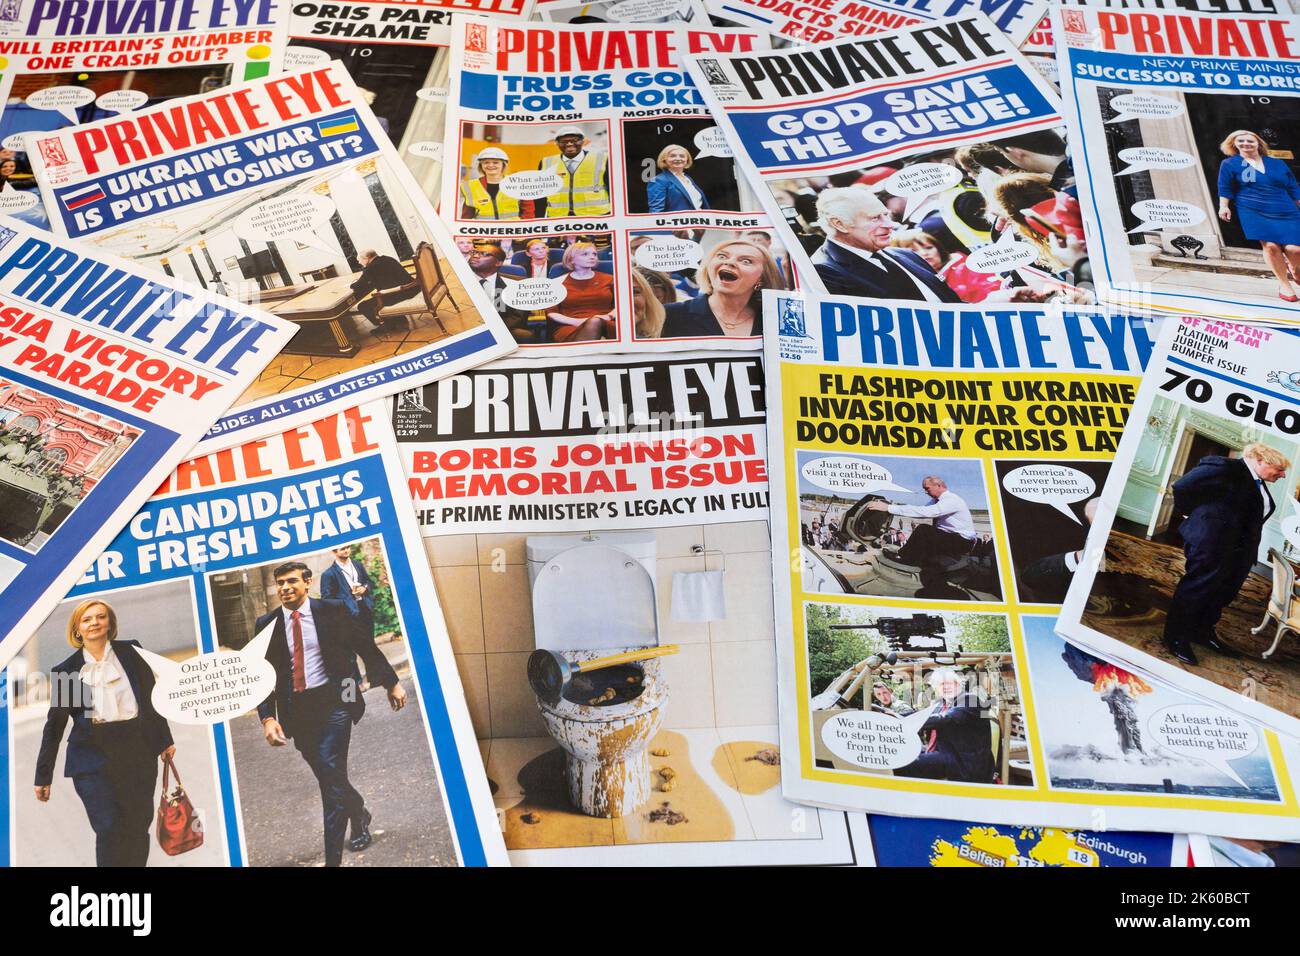 Raccolta di notizie e copertine di riviste private Eye che mostrano 2022 titoli del Regno Unito sul governo britannico, la morte della Regina e la guerra dell'Ucraina Foto Stock